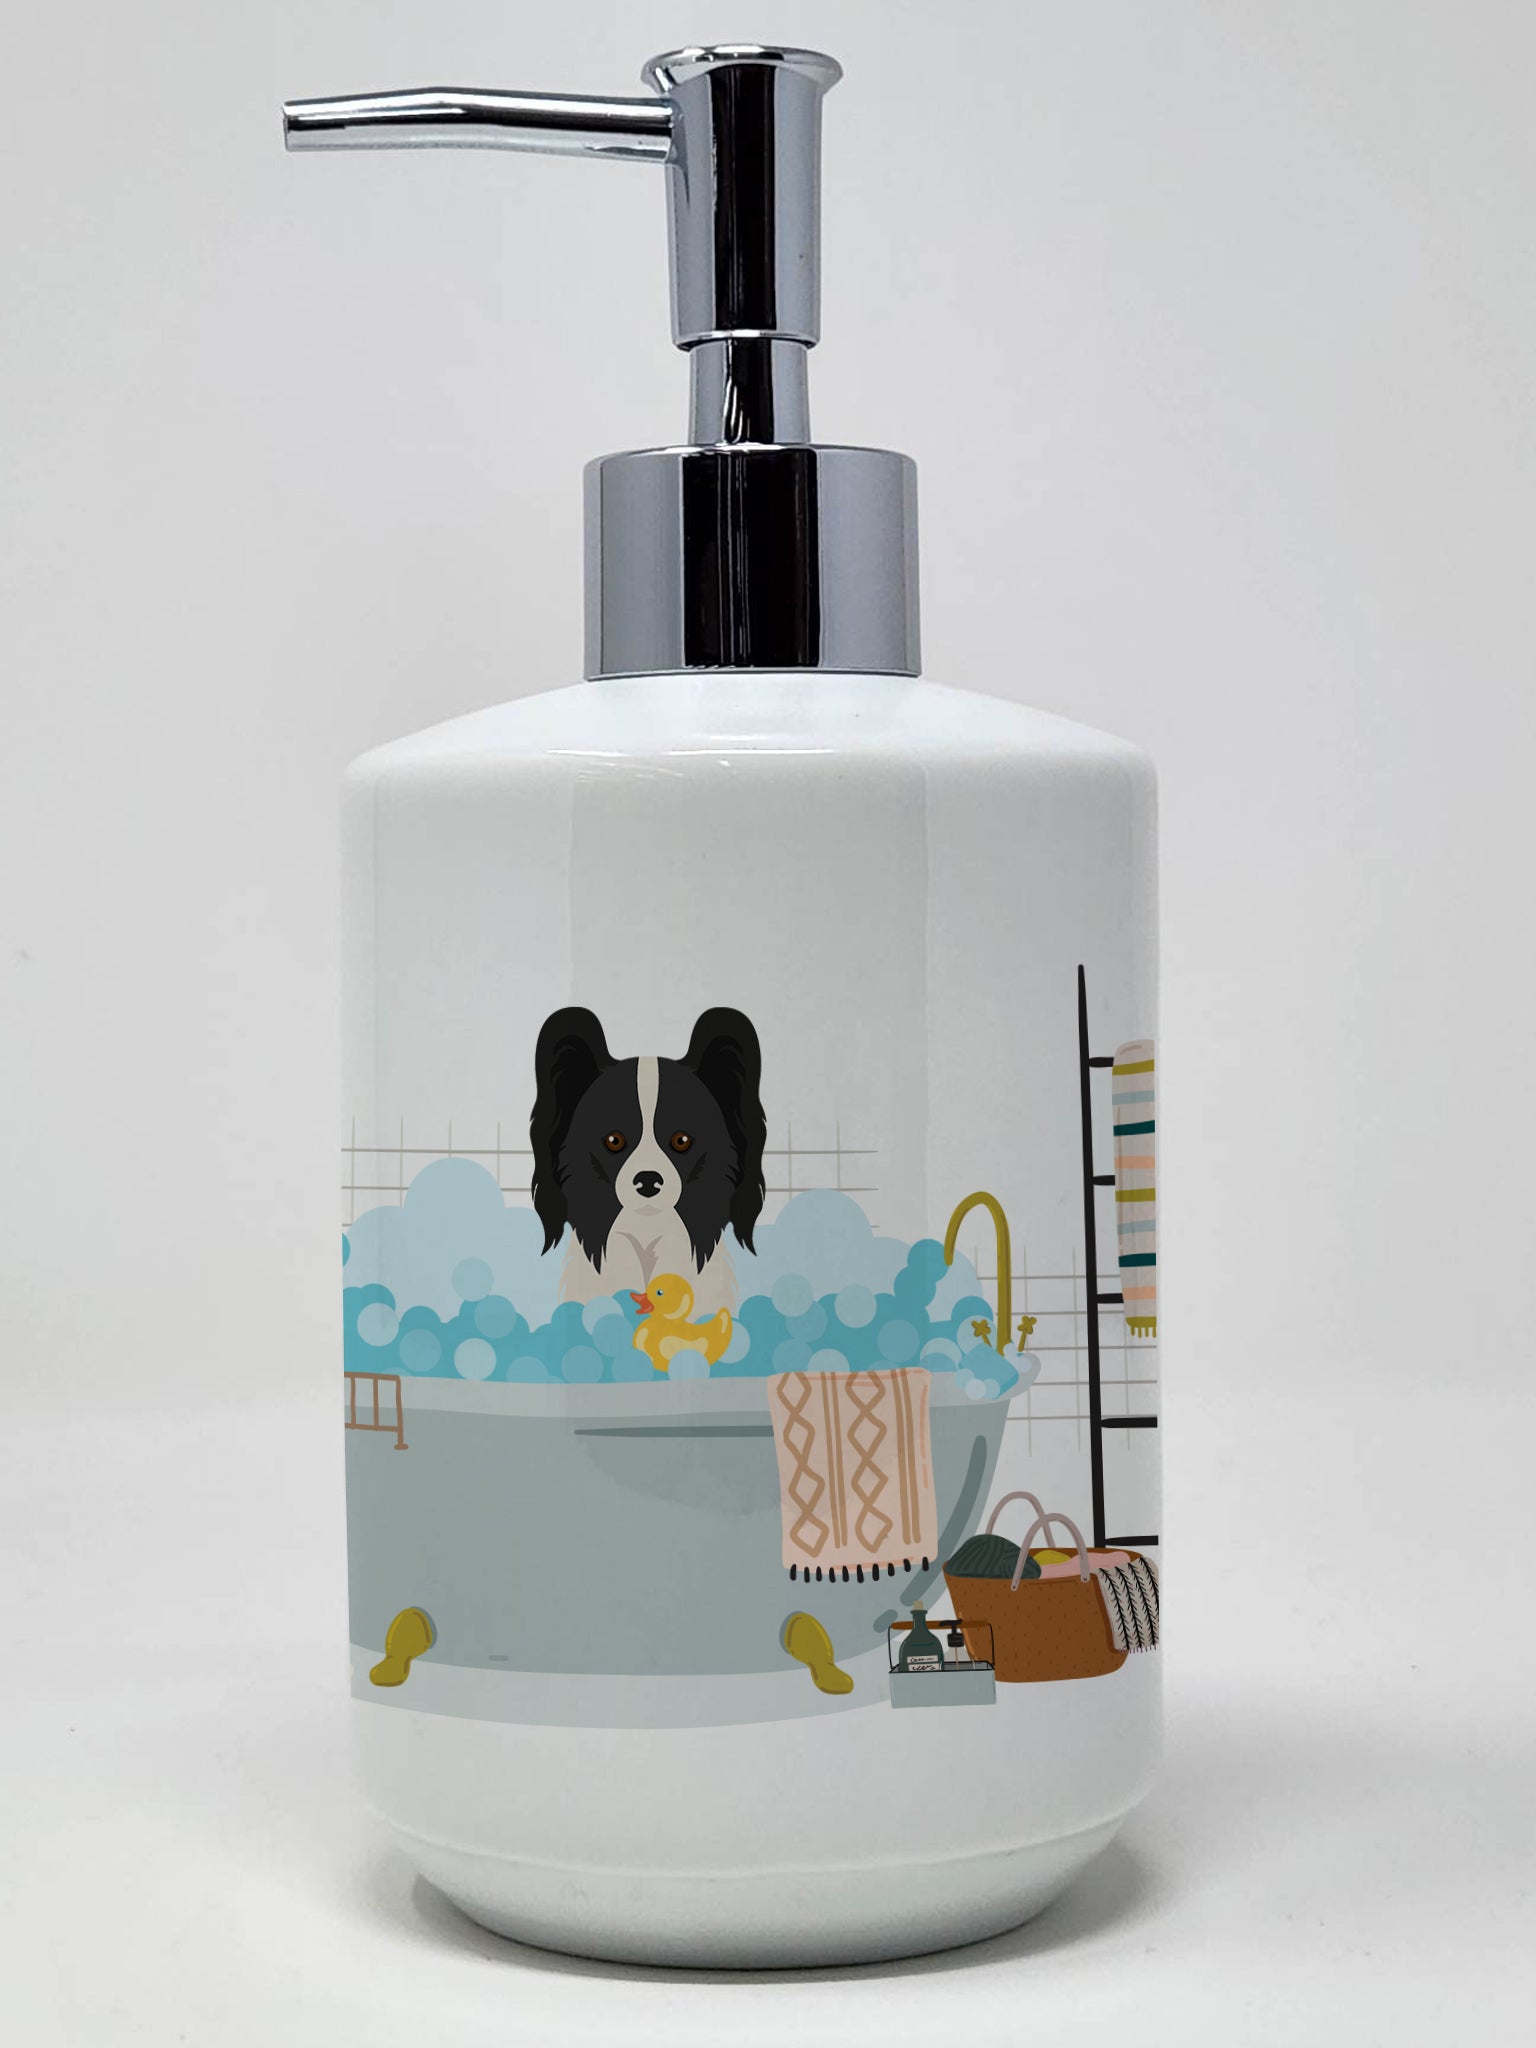 Buy this Black and White Papillon Ceramic Soap Dispenser